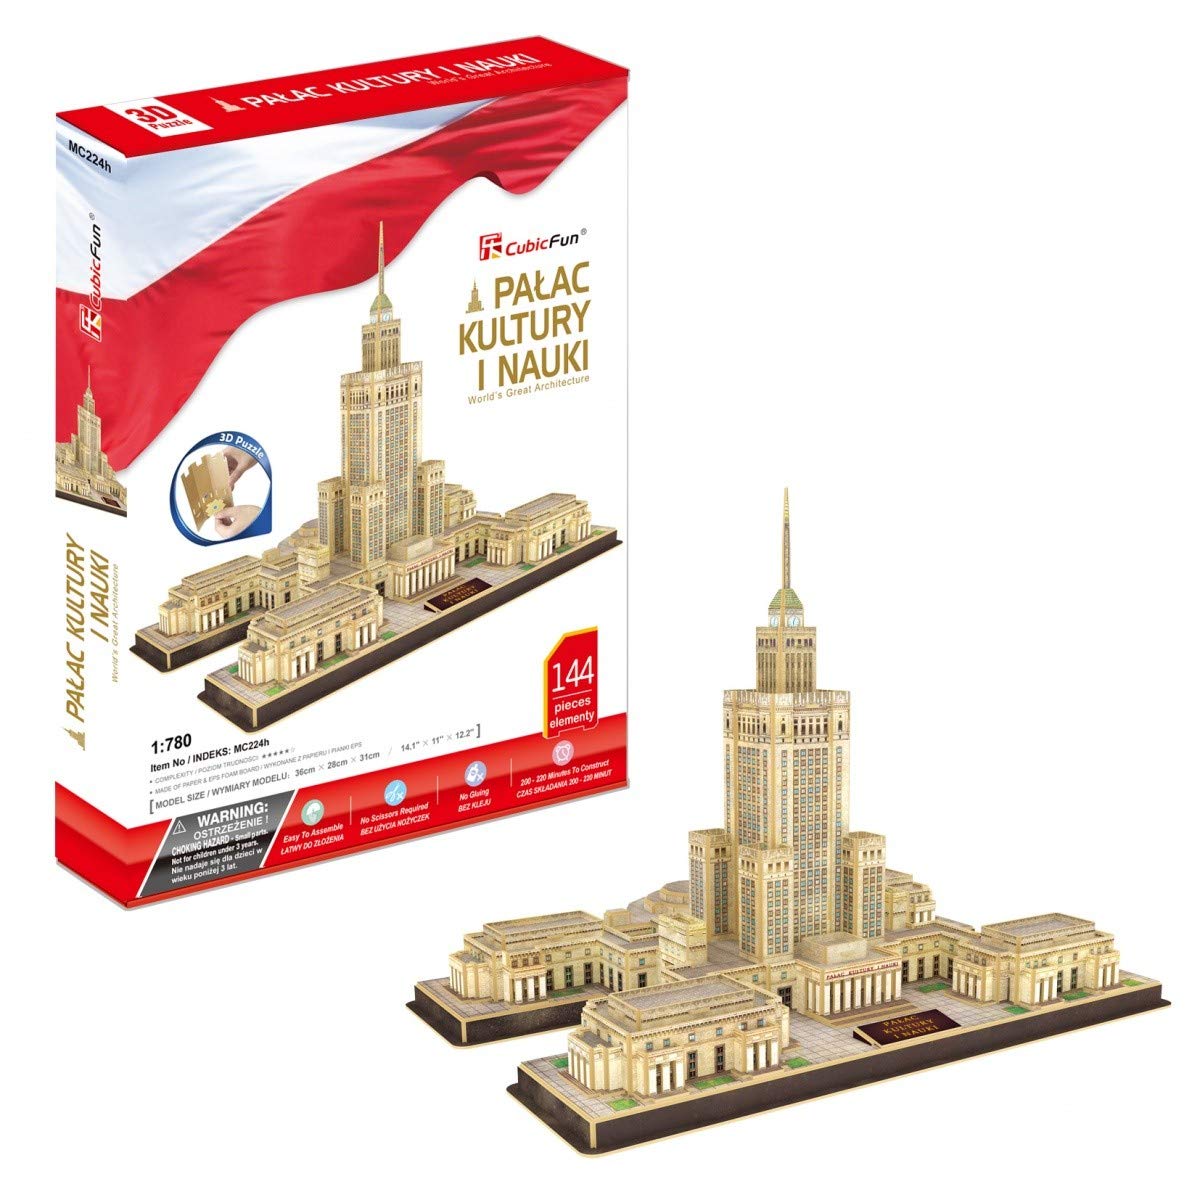 Cubicfun Puzzle 144 Pieces 3D Puzzle Cultural Palace